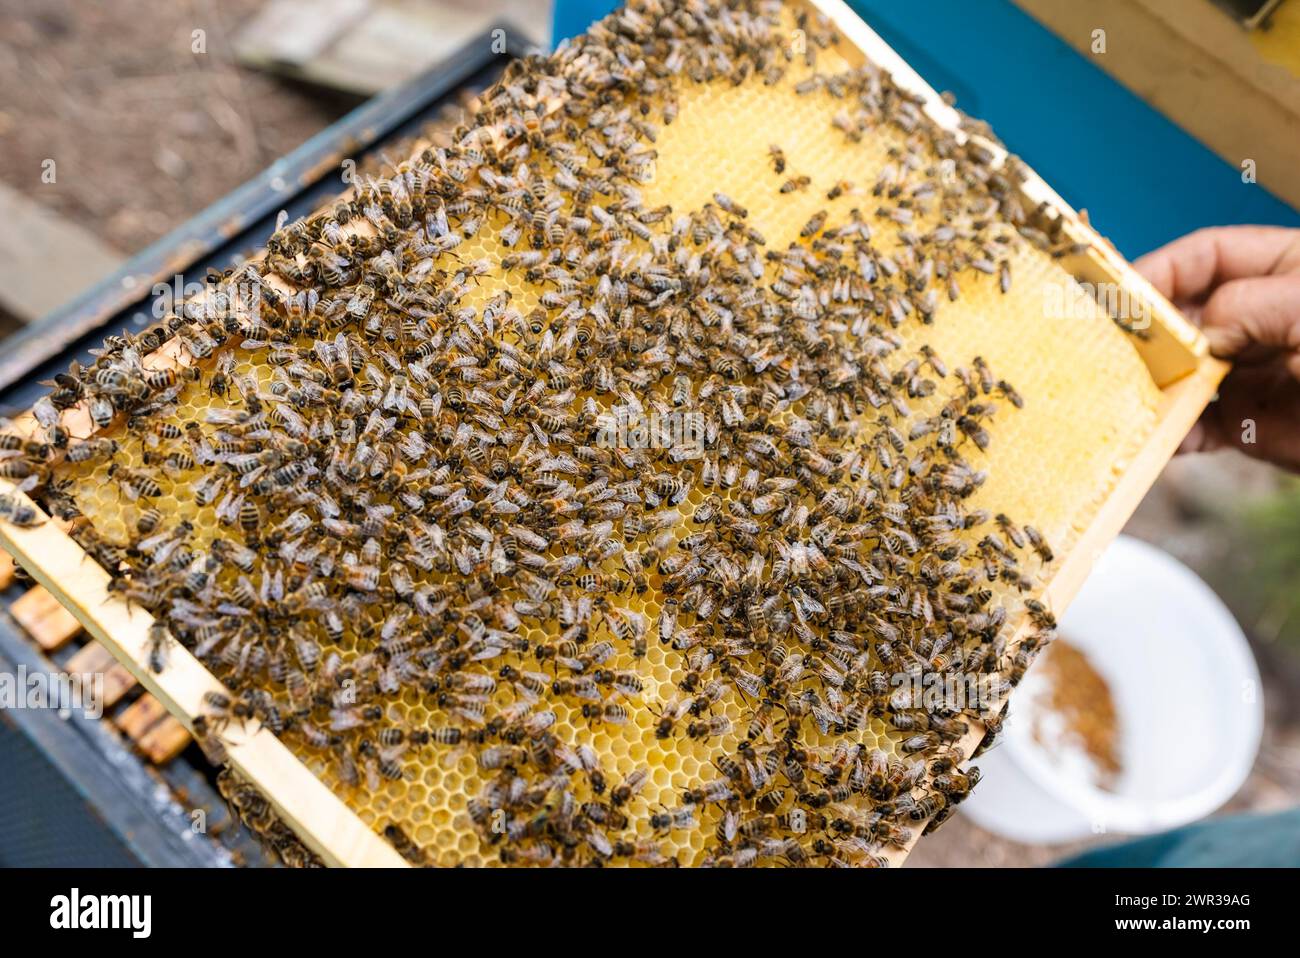 Fantastique ruche produisant le miel, la nature, l'homme et l'abeille, miel doux, nid d'abeille, nectar, apiculture, Pologne Banque D'Images